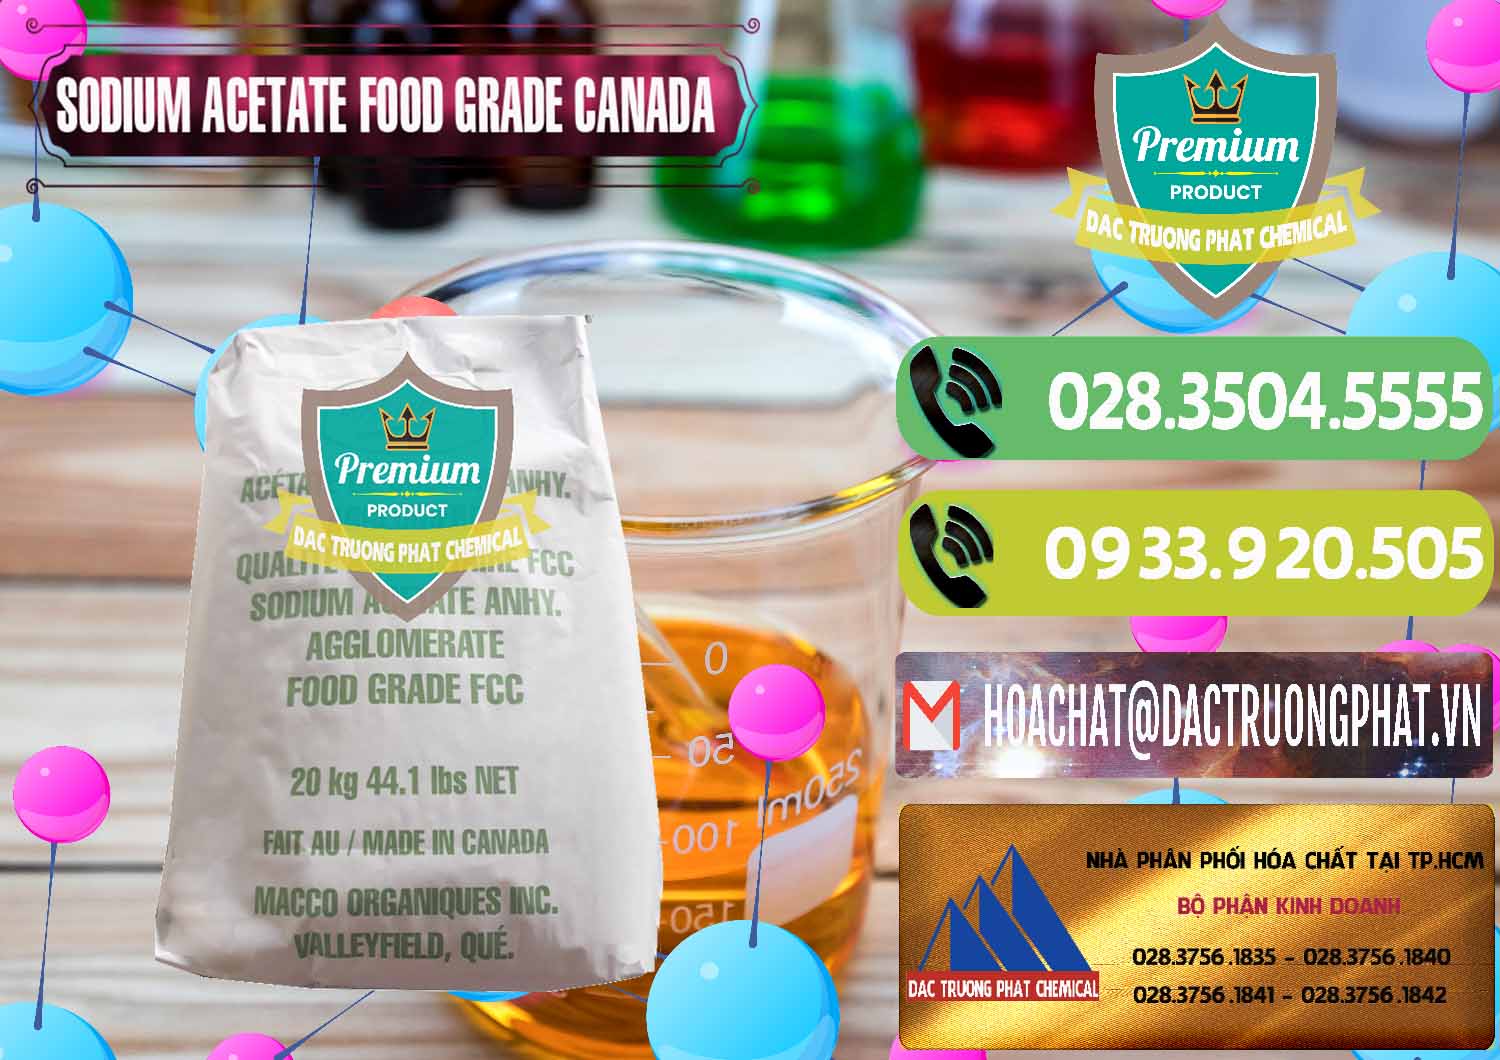 Nơi chuyên bán ( phân phối ) Sodium Acetate - Natri Acetate Food Grade Canada - 0282 - Chuyên kinh doanh - phân phối hóa chất tại TP.HCM - hoachatmientay.vn